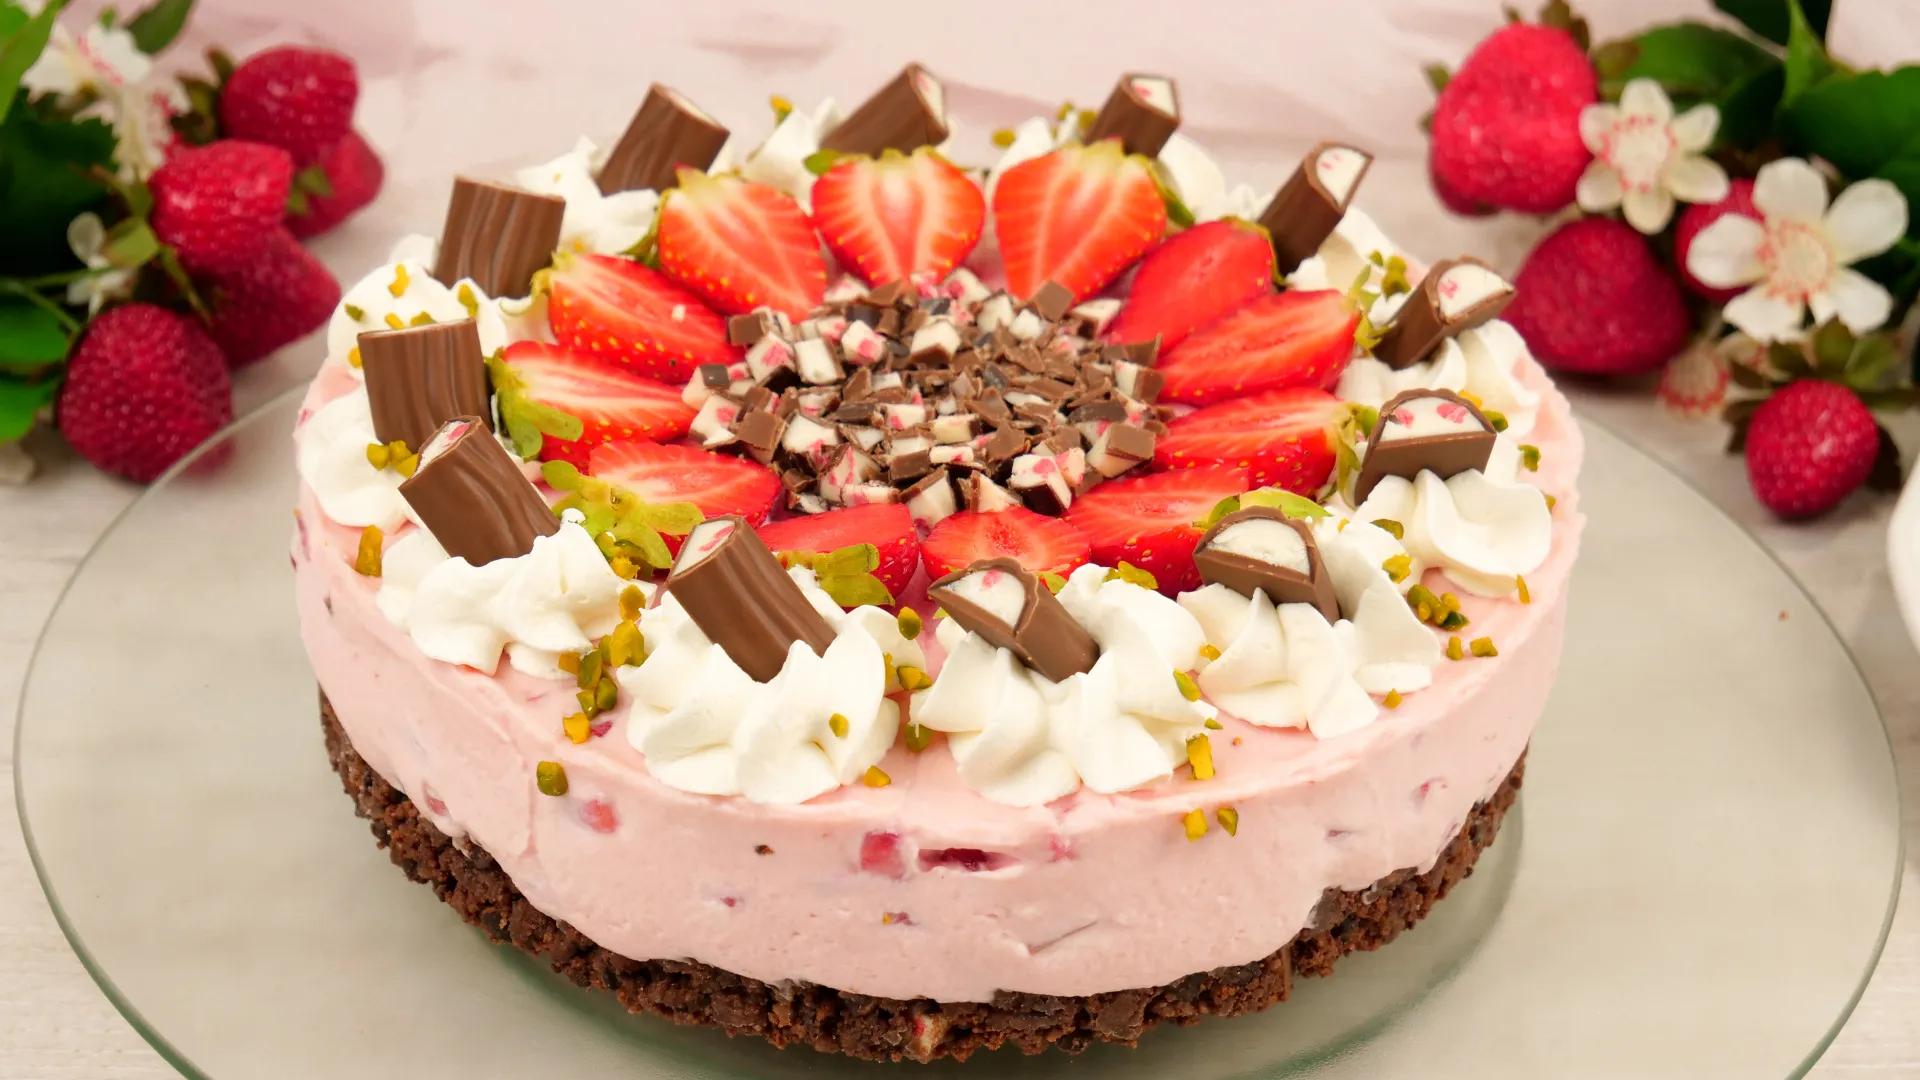 Rezept: Yogurette Erdbeer Torte ohne Backen I No Bake Erdbeertorte